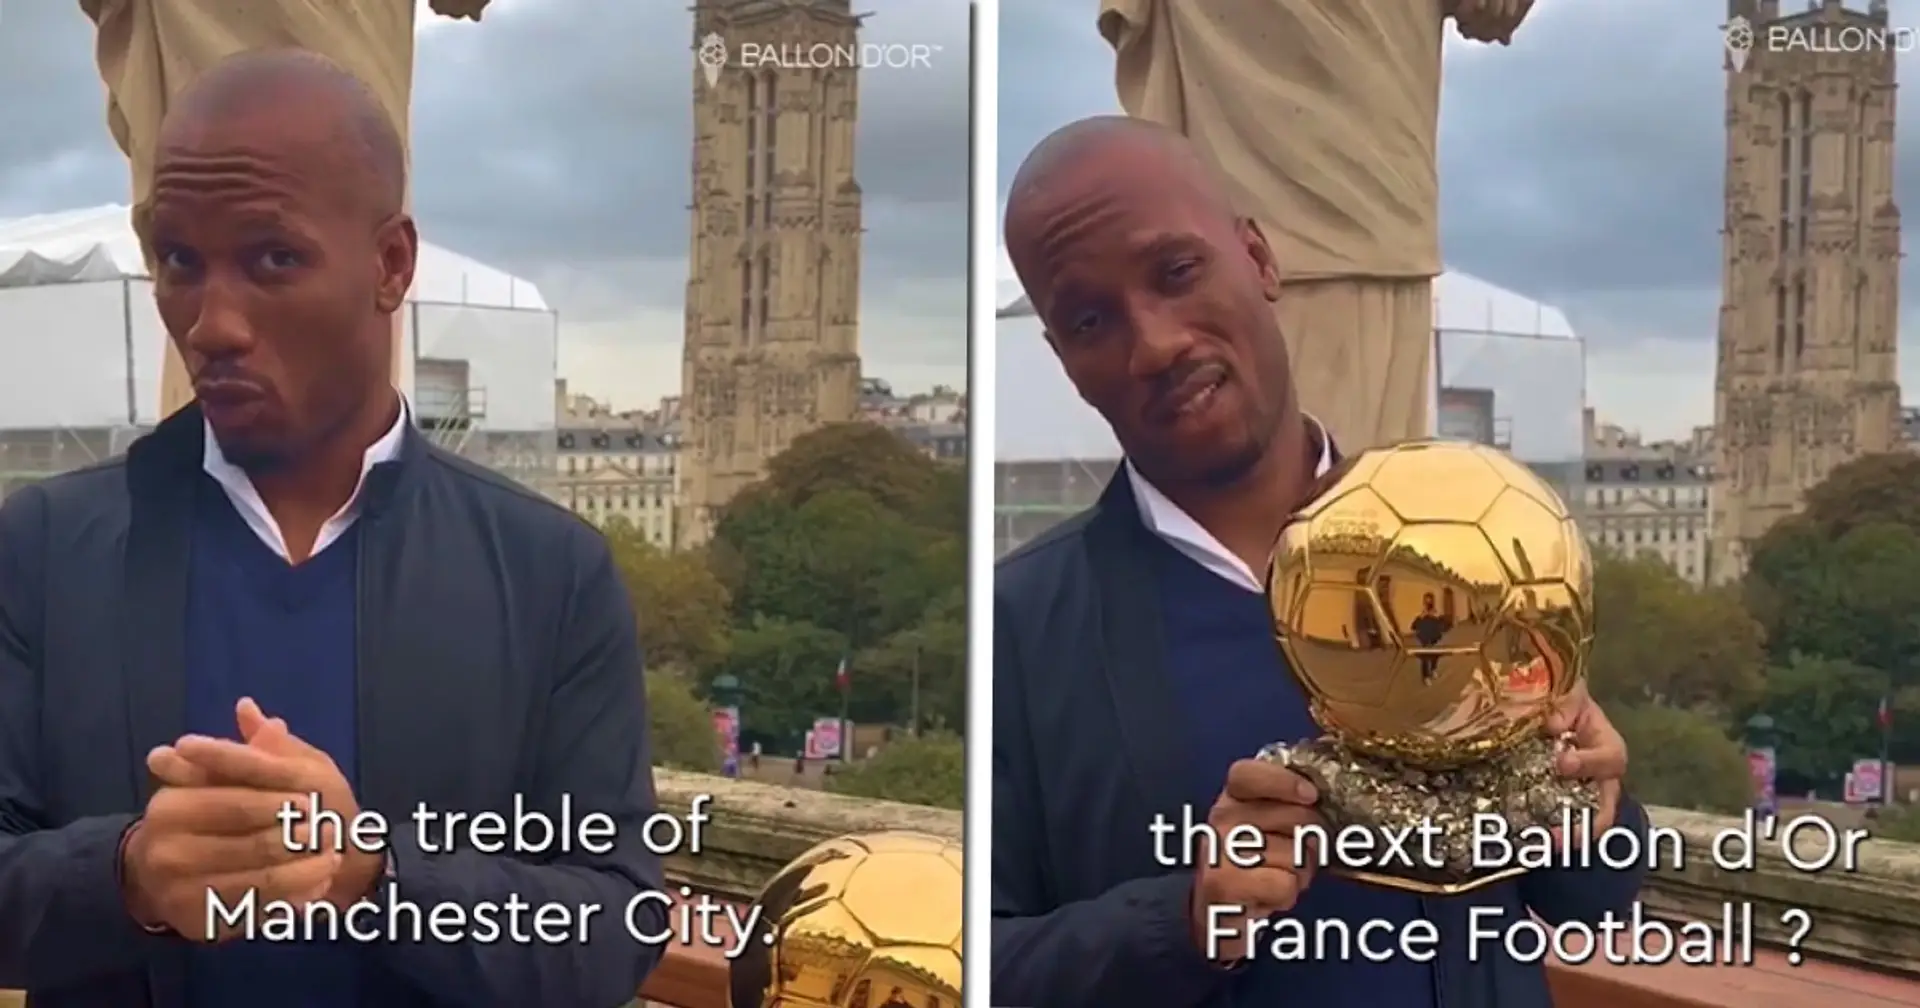 Didier Drogba fait allusion au vainqueur du Ballon d'Or alors qu'il atterrit à Paris pour un gala